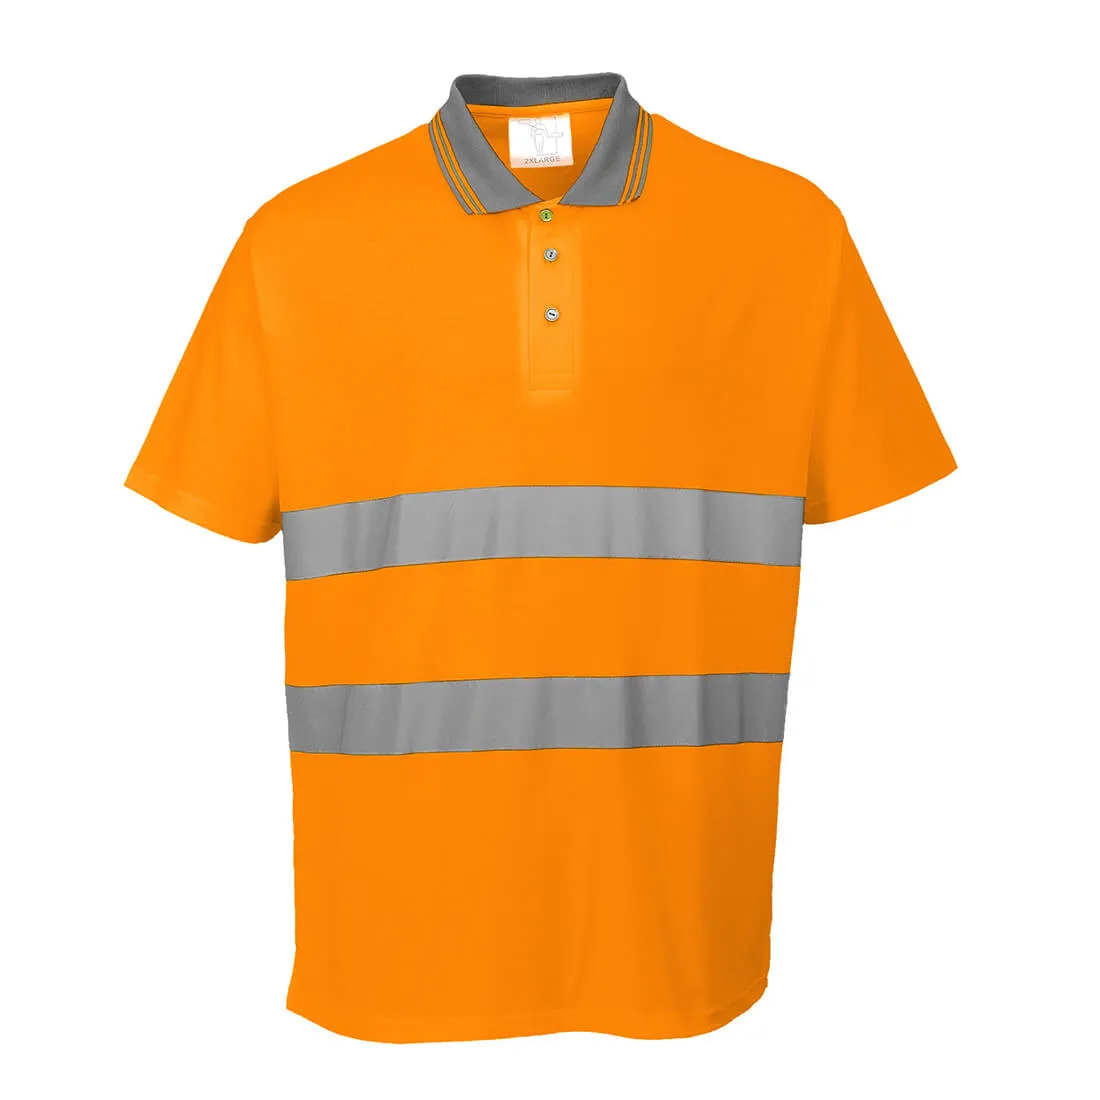 Portwest Mens Class 2 Hi Vis Cotton Comfort Polo Shirt - Orange, 2XL